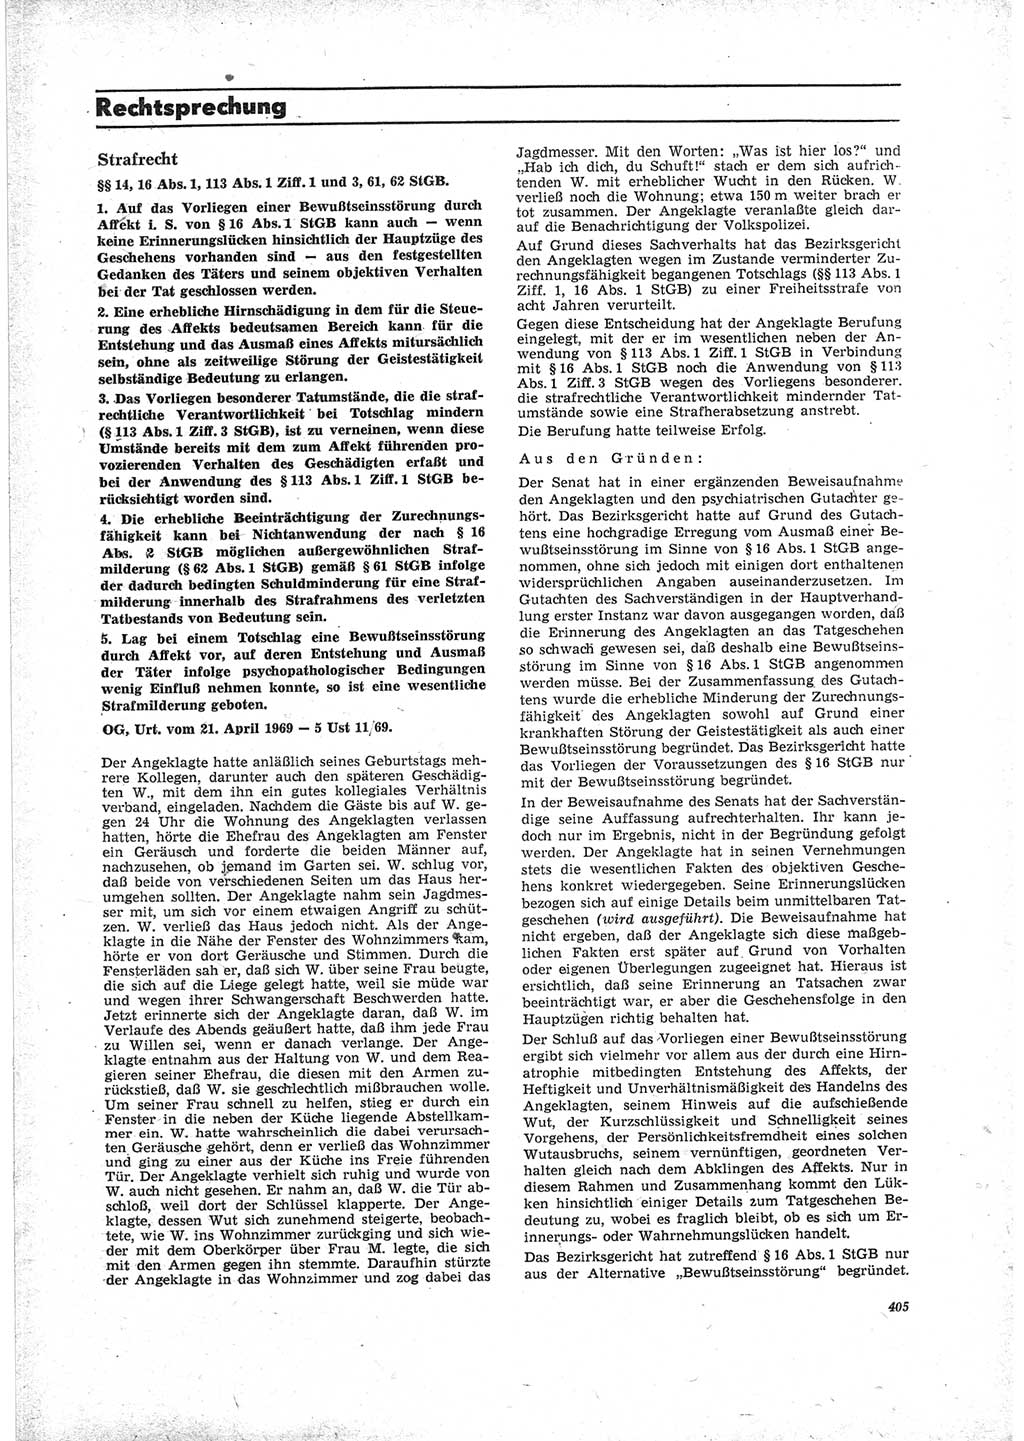 Neue Justiz (NJ), Zeitschrift für Recht und Rechtswissenschaft [Deutsche Demokratische Republik (DDR)], 23. Jahrgang 1969, Seite 405 (NJ DDR 1969, S. 405)